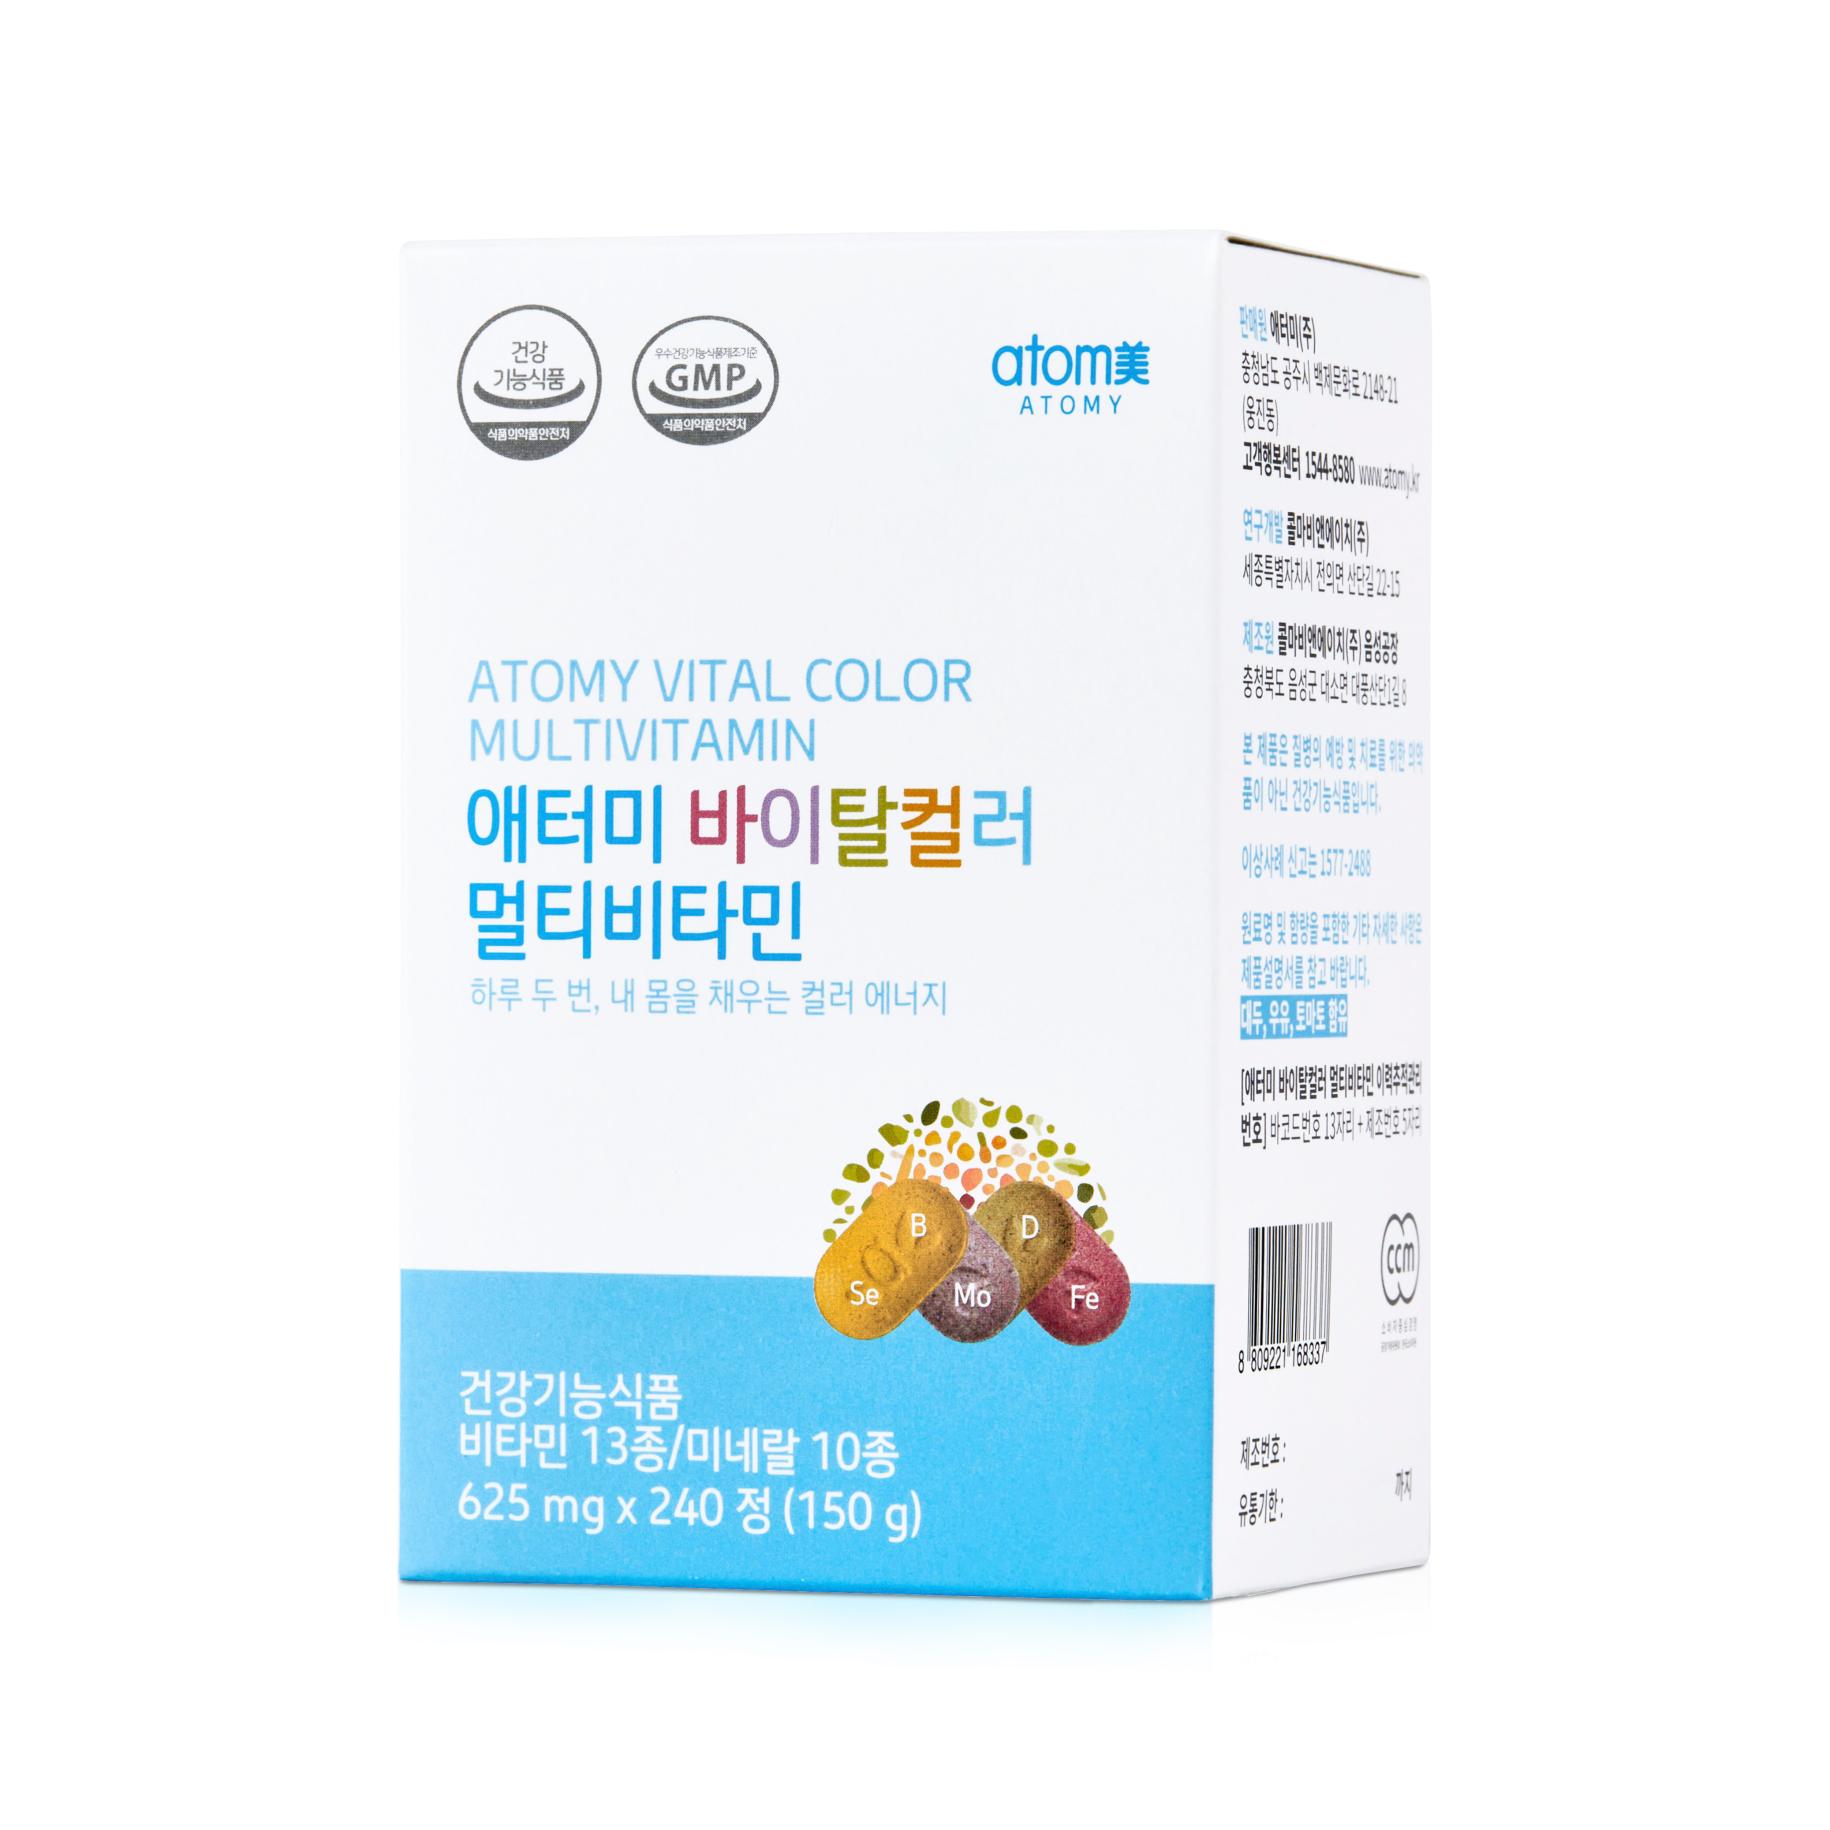 Vitamin tổng hợp hồng sâm Hàn Quốc có tác dụng giảm thiểu stress và mệt mỏi không?
